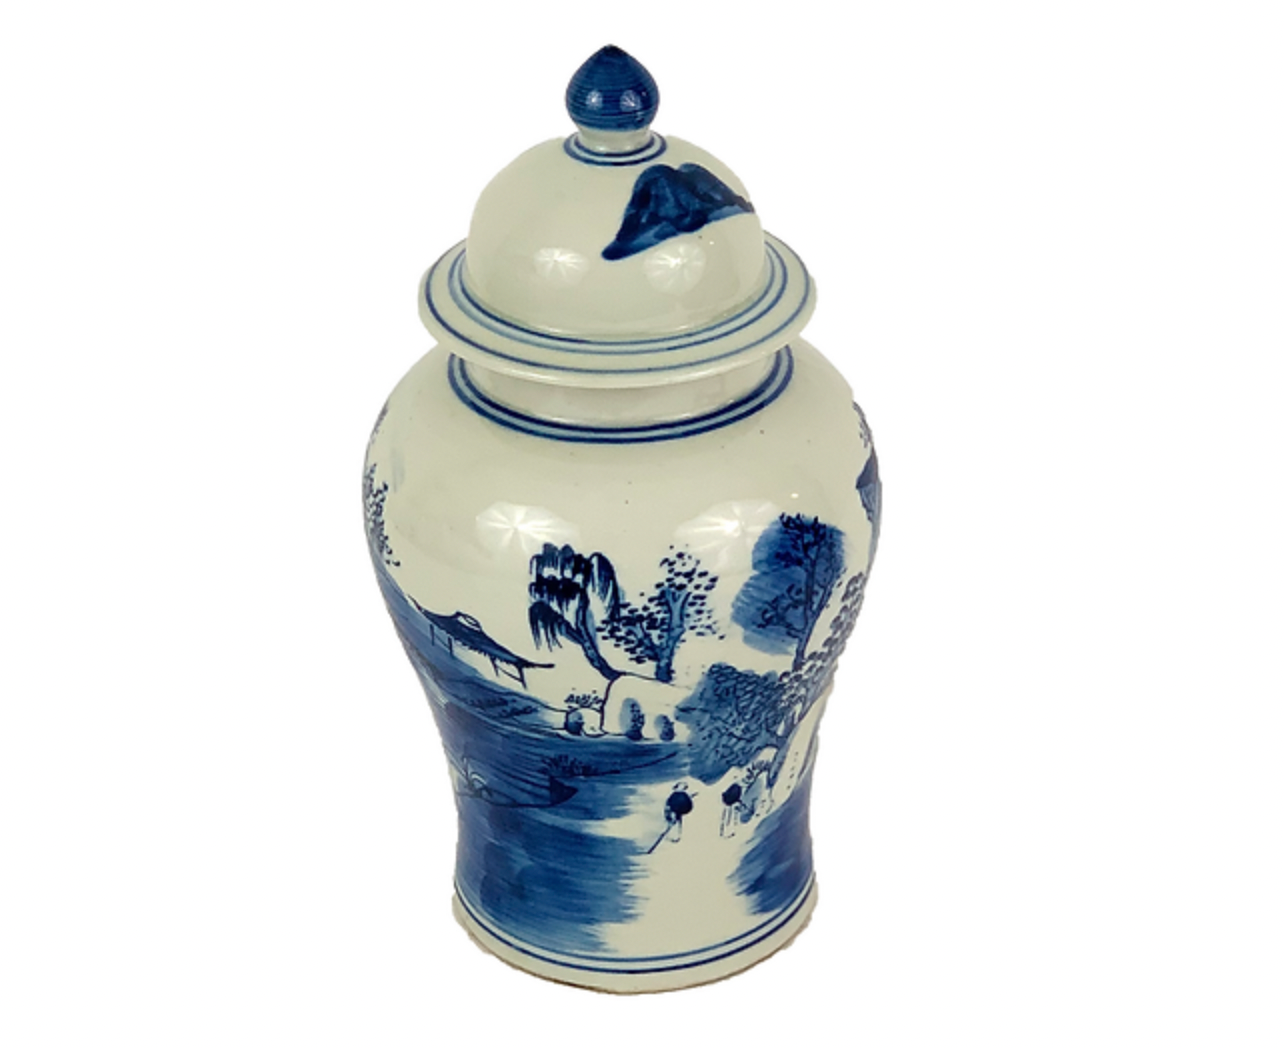 Porcelain Temple Jar with Village